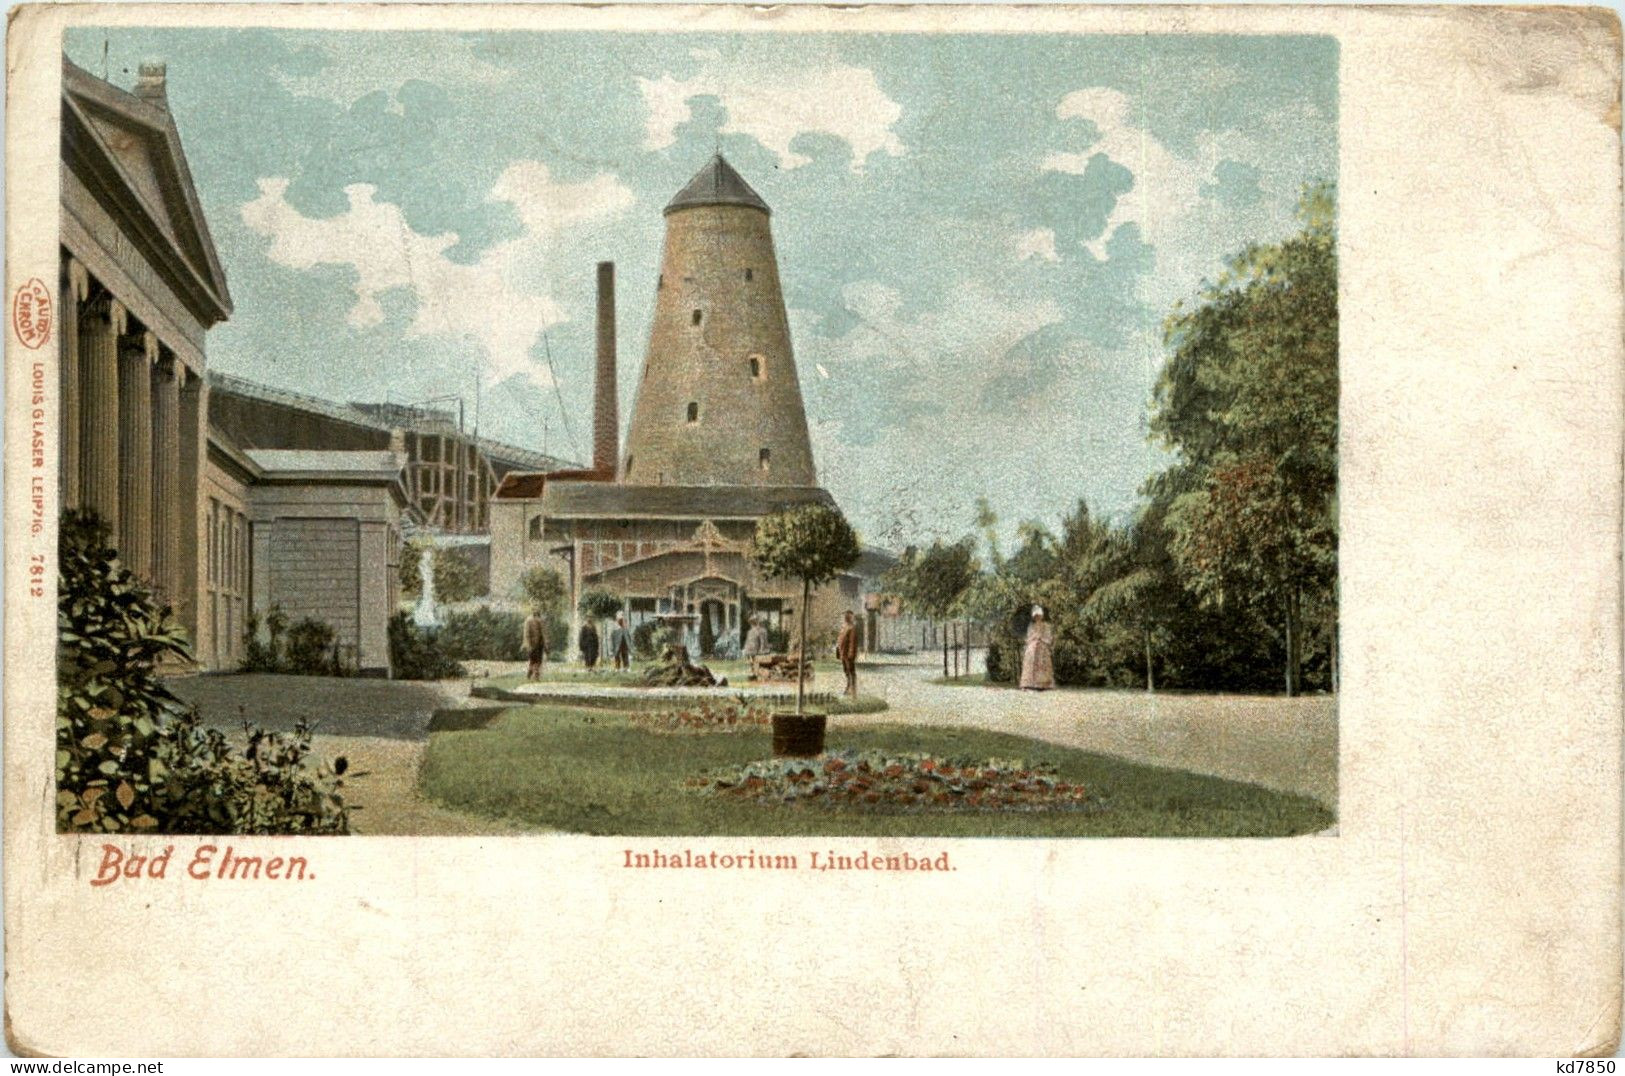 Bad Elmen - Inhalatorium Lindenbad - Schönebeck (Elbe)